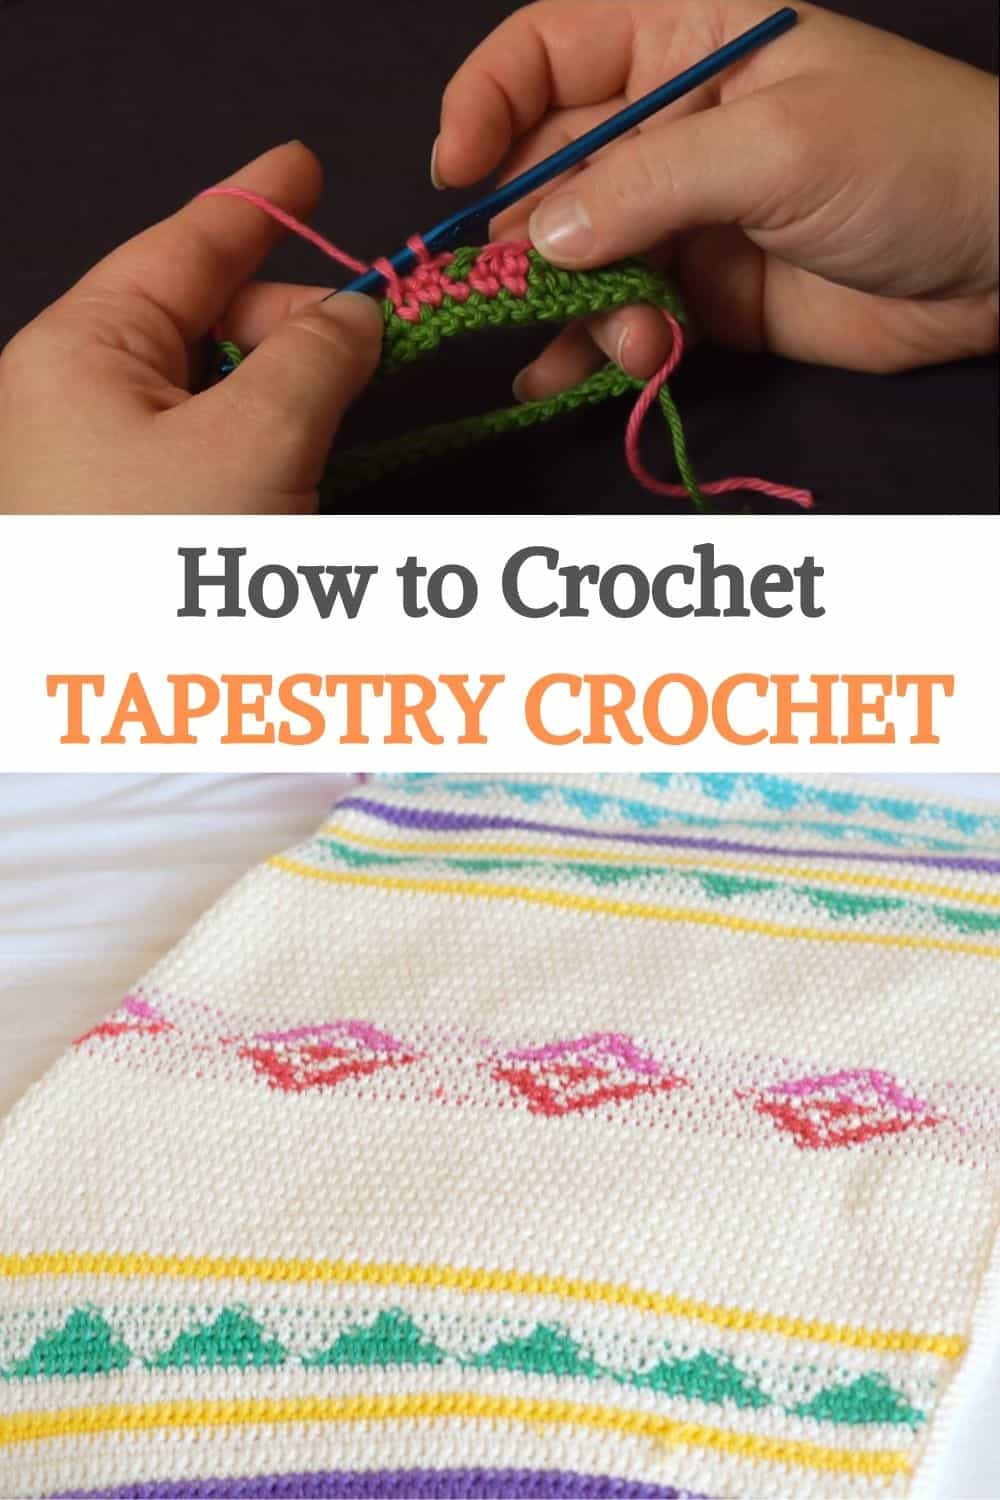 Tapestry Crochet